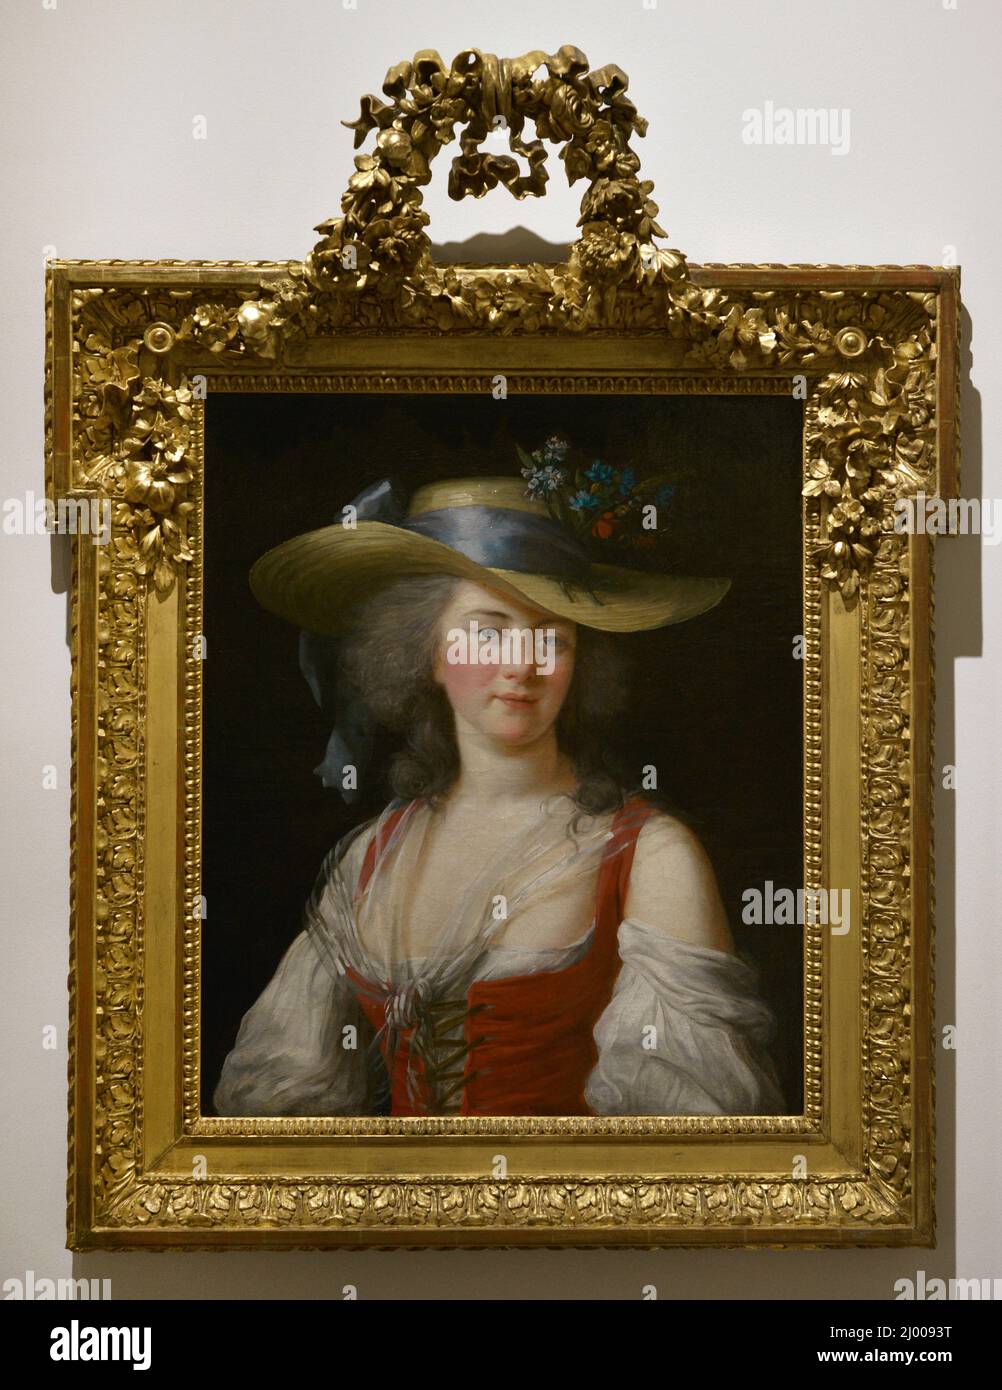 Elisabeth Louise Vigée Le Brun (1755-1842). French portrait painter. Portrait of Anne Catherine Le Preudhomme de Châtenoy, Countess of Verdun, 1782. Oil on canvas. National Museum of Ancient Art (MNAA). Lisbon. Portugal. Stock Photo